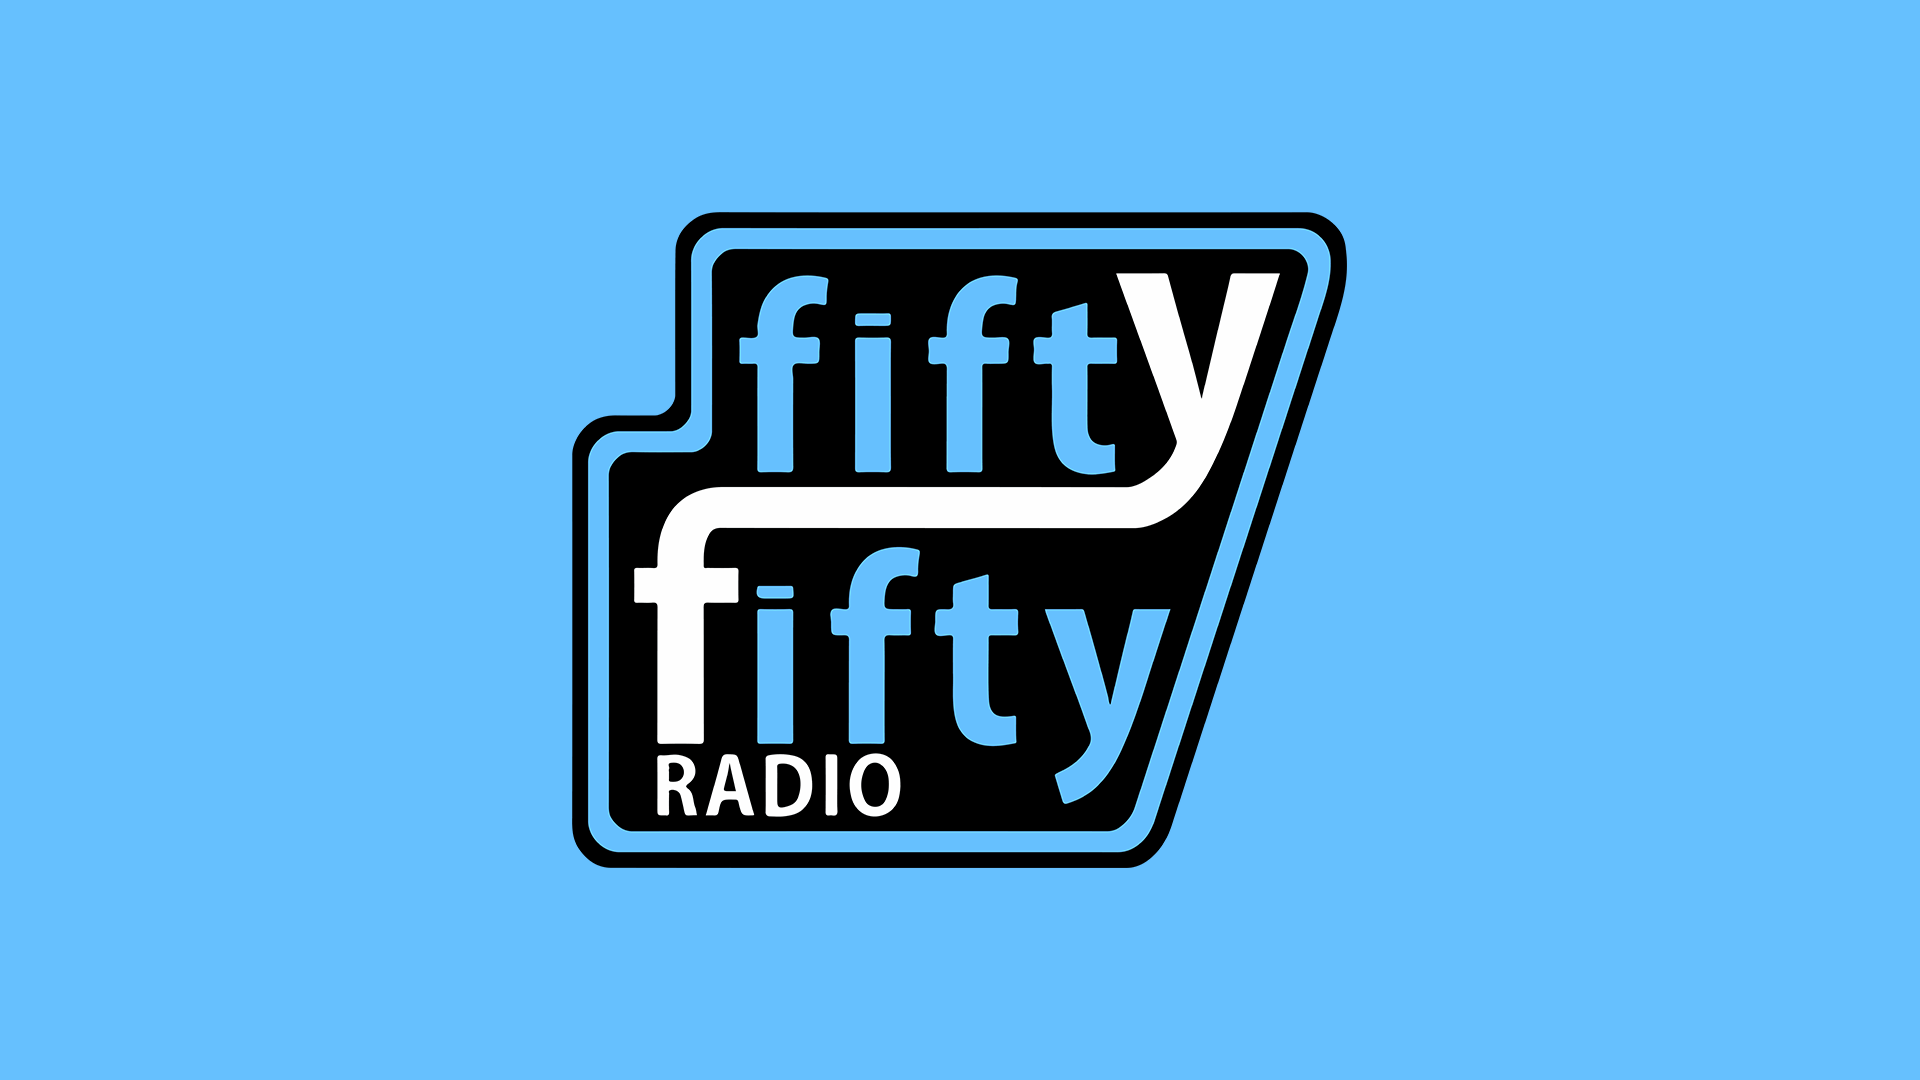 Willkommen bei FiftyFifty Radio!